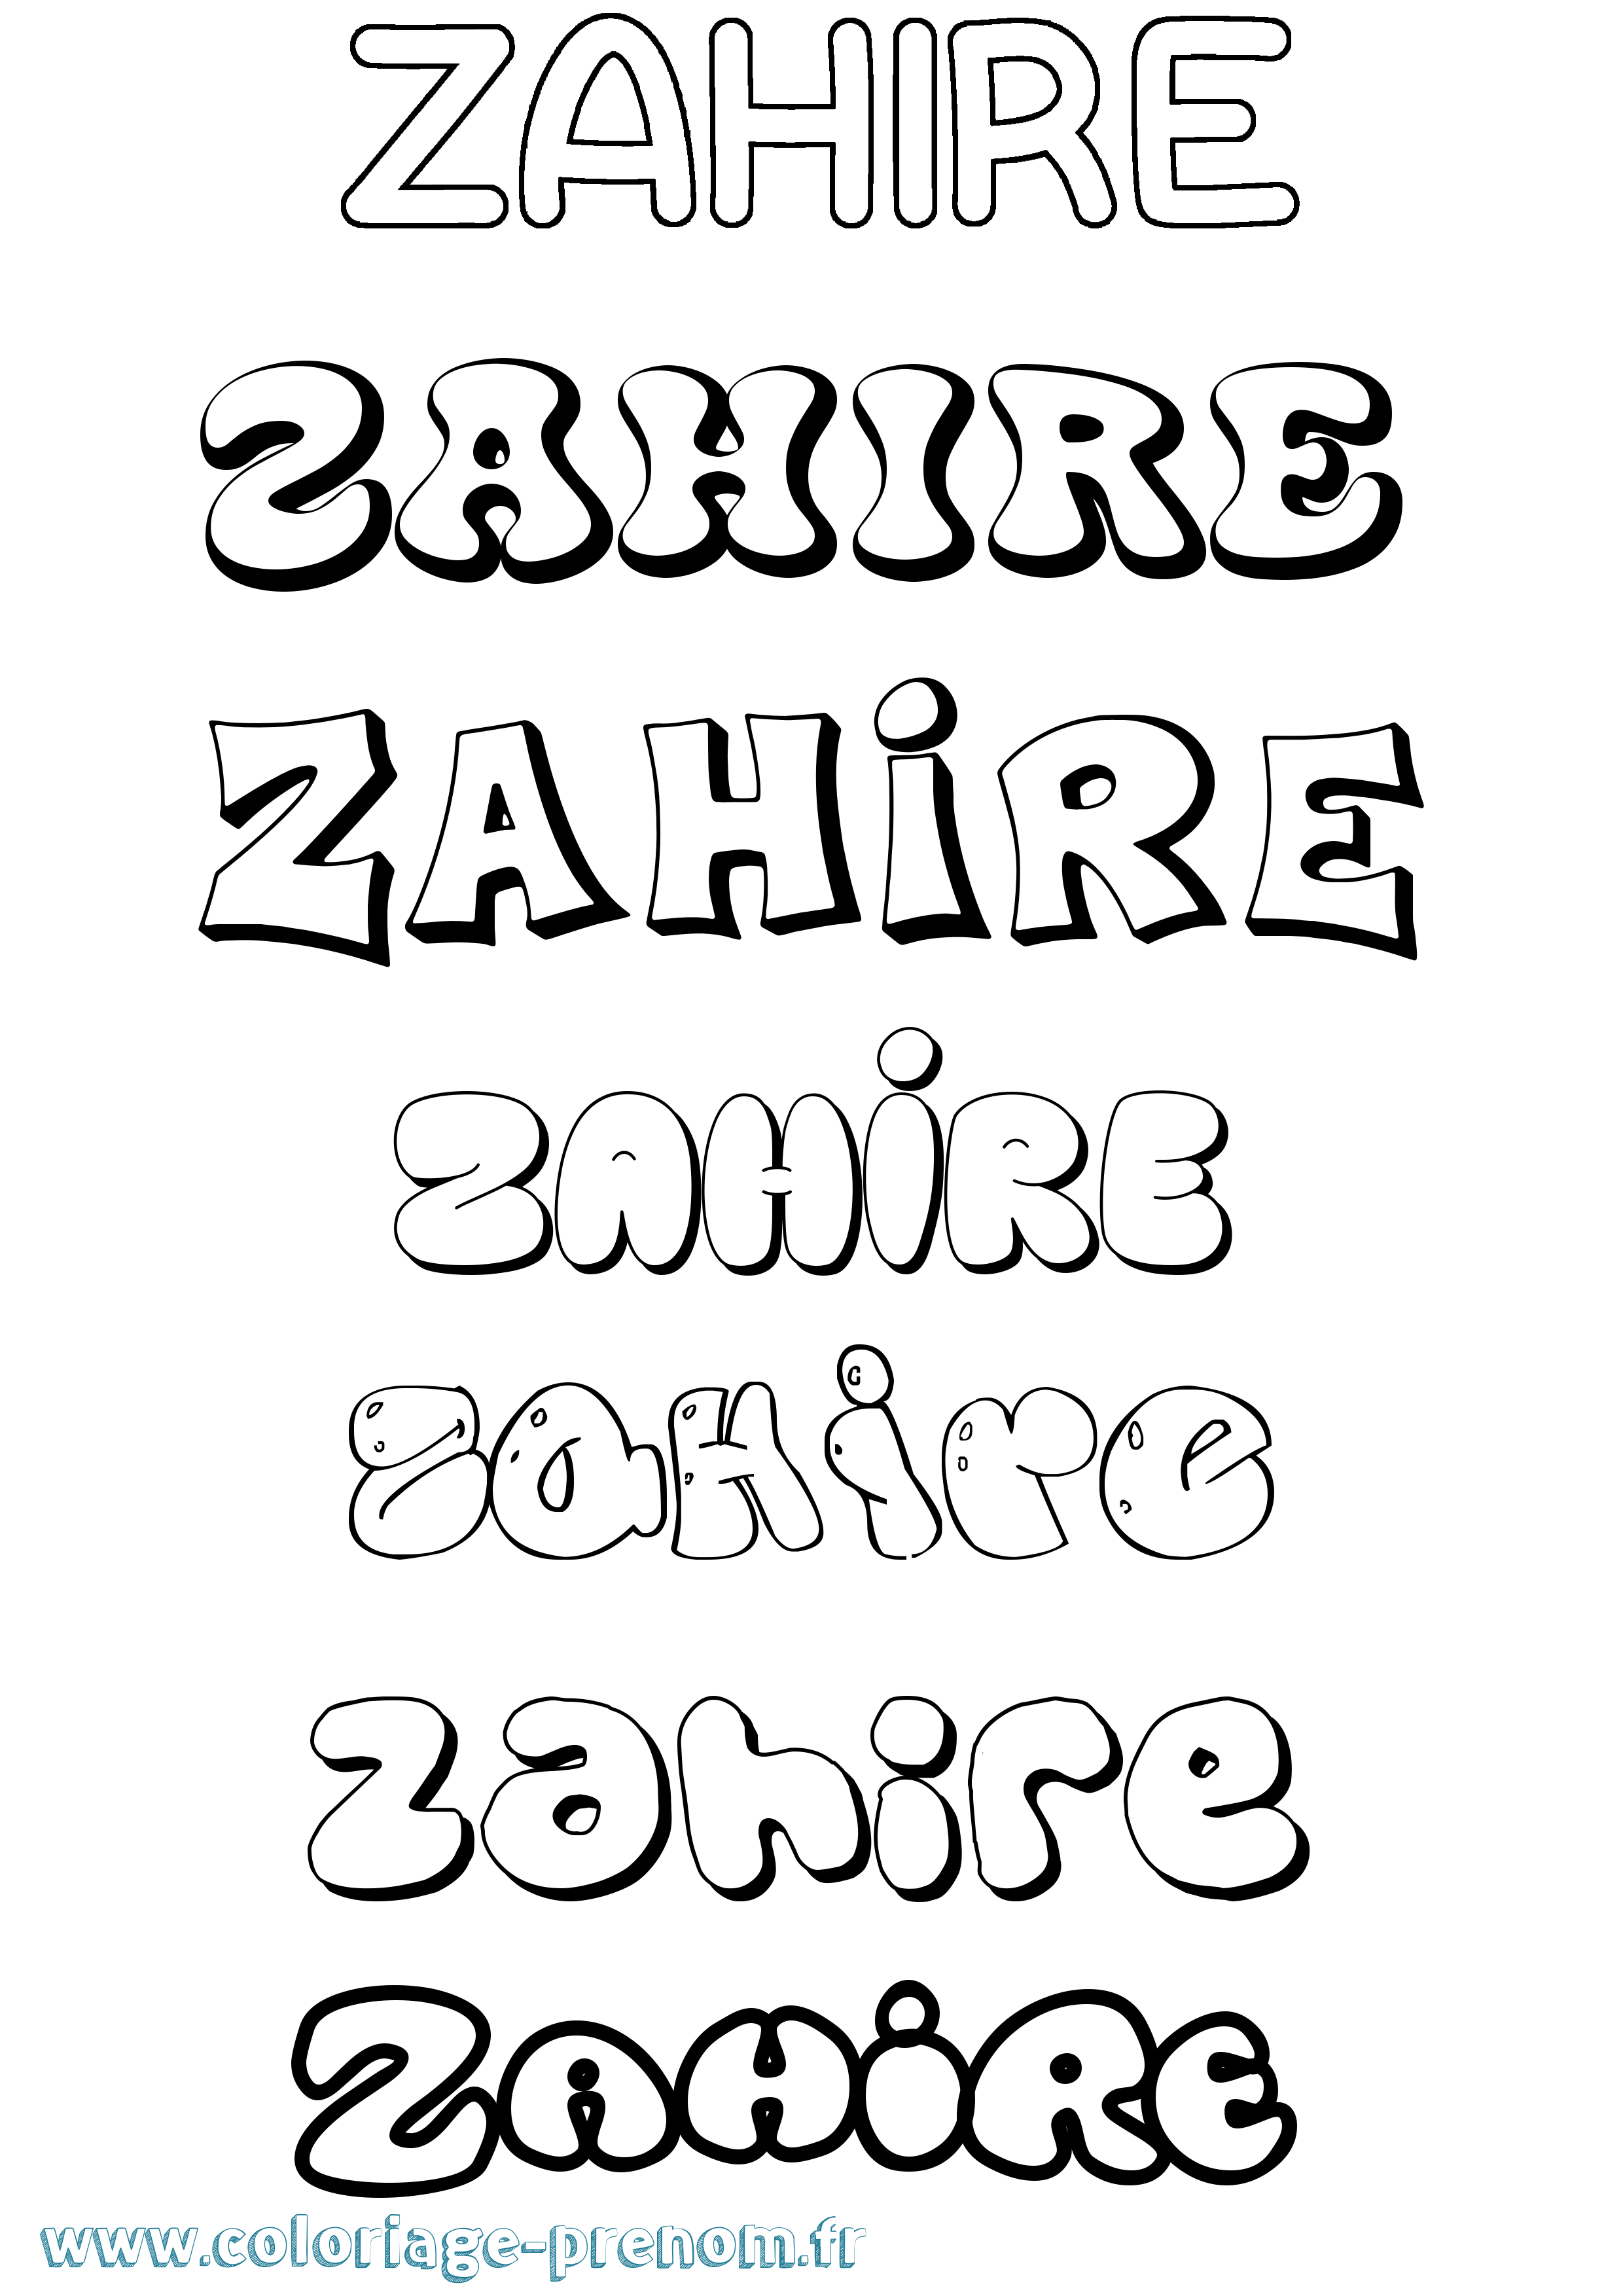 Coloriage prénom Zahire Bubble